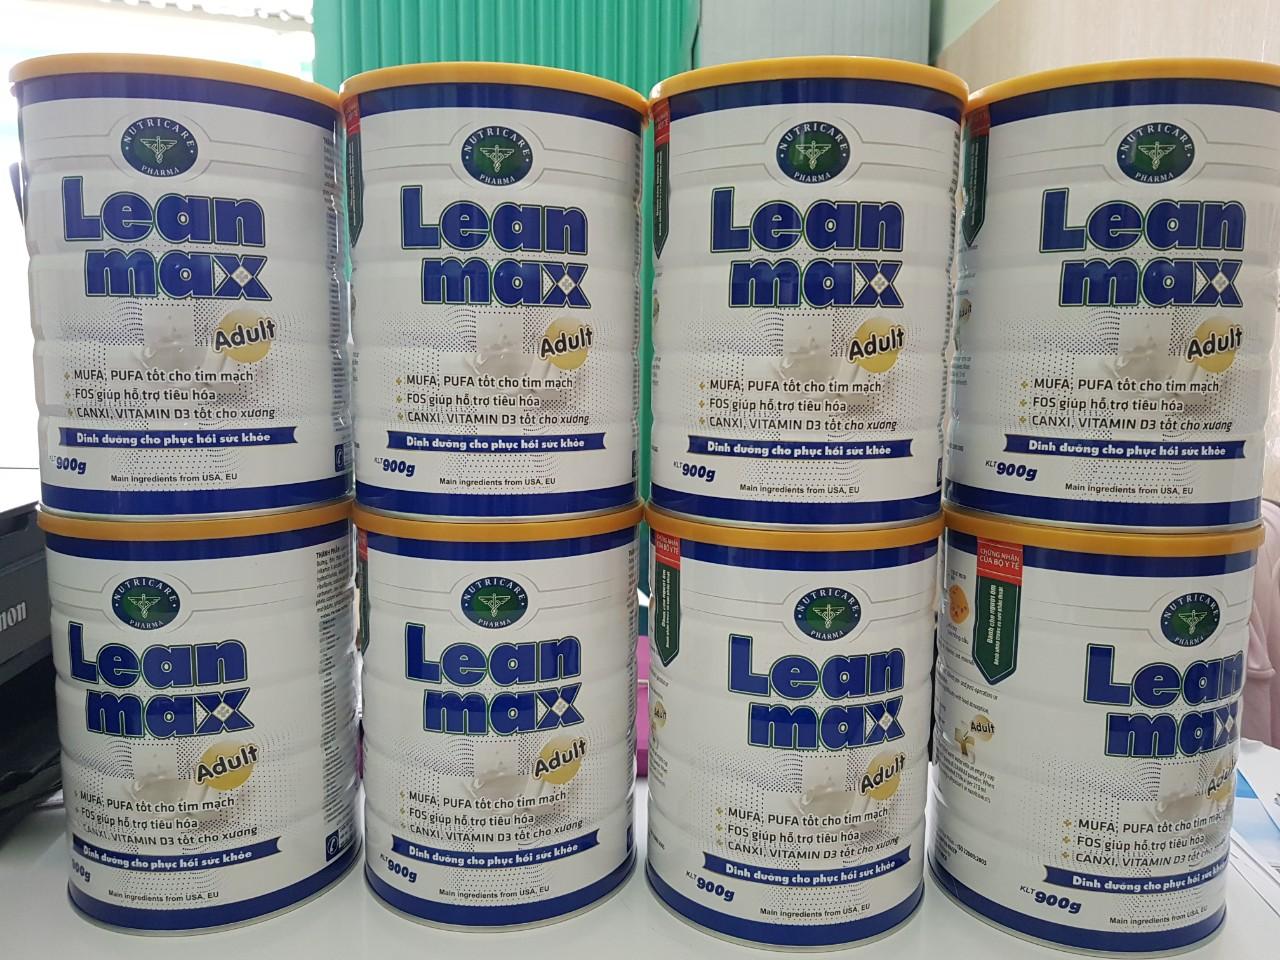 Sữa lean max adult 900g dành cho người lớn tuổi, người ốm bệnh